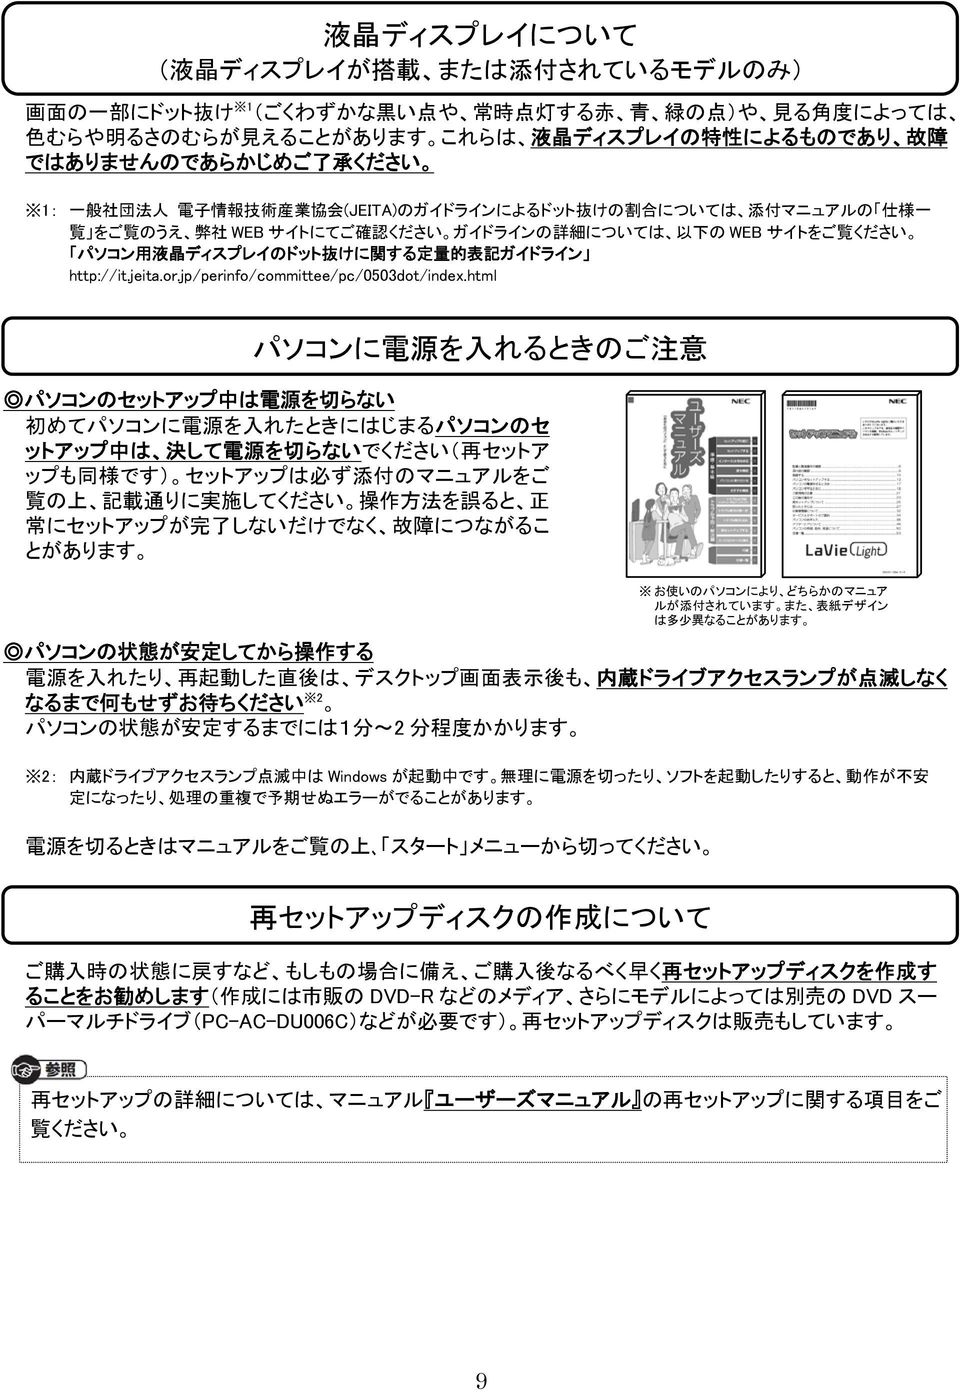 ディスプレイのドット 抜 けに 関 する 定 量 的 表 記 ガイドライン http://it.jeita.or.jp/perinfo/committee/pc/0503dot/index.